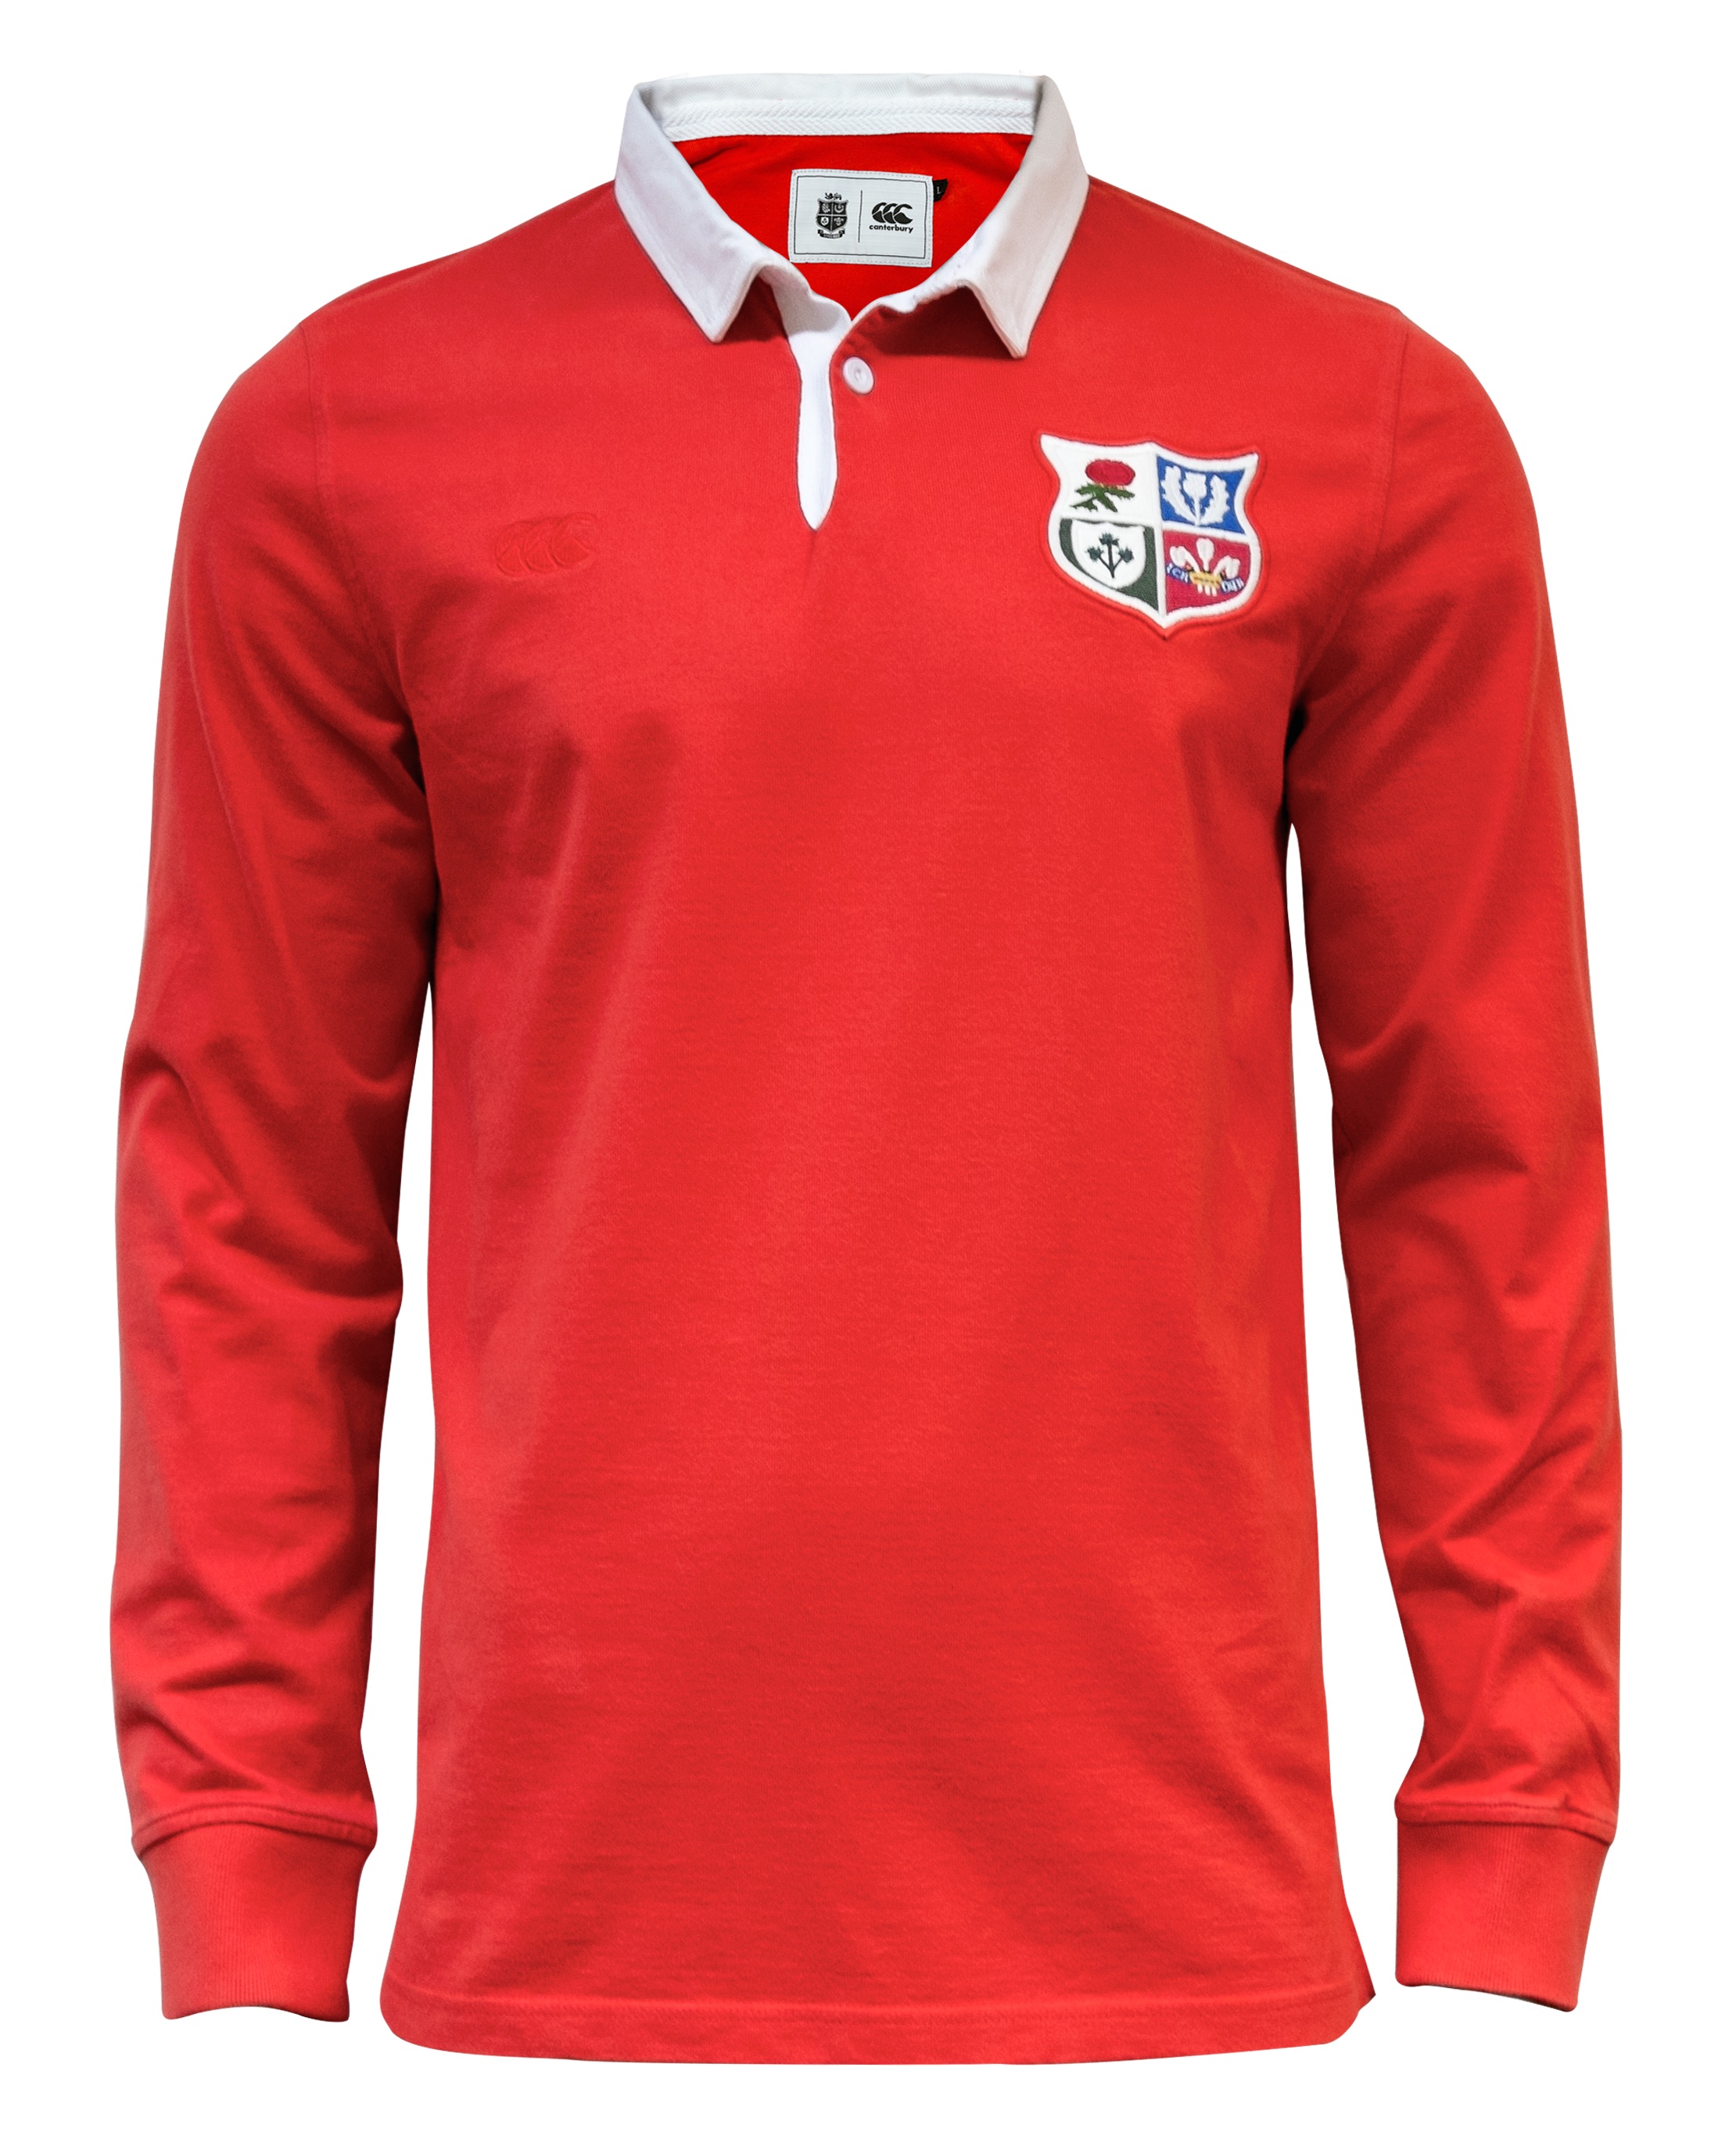 british and irish lions rugby shirt